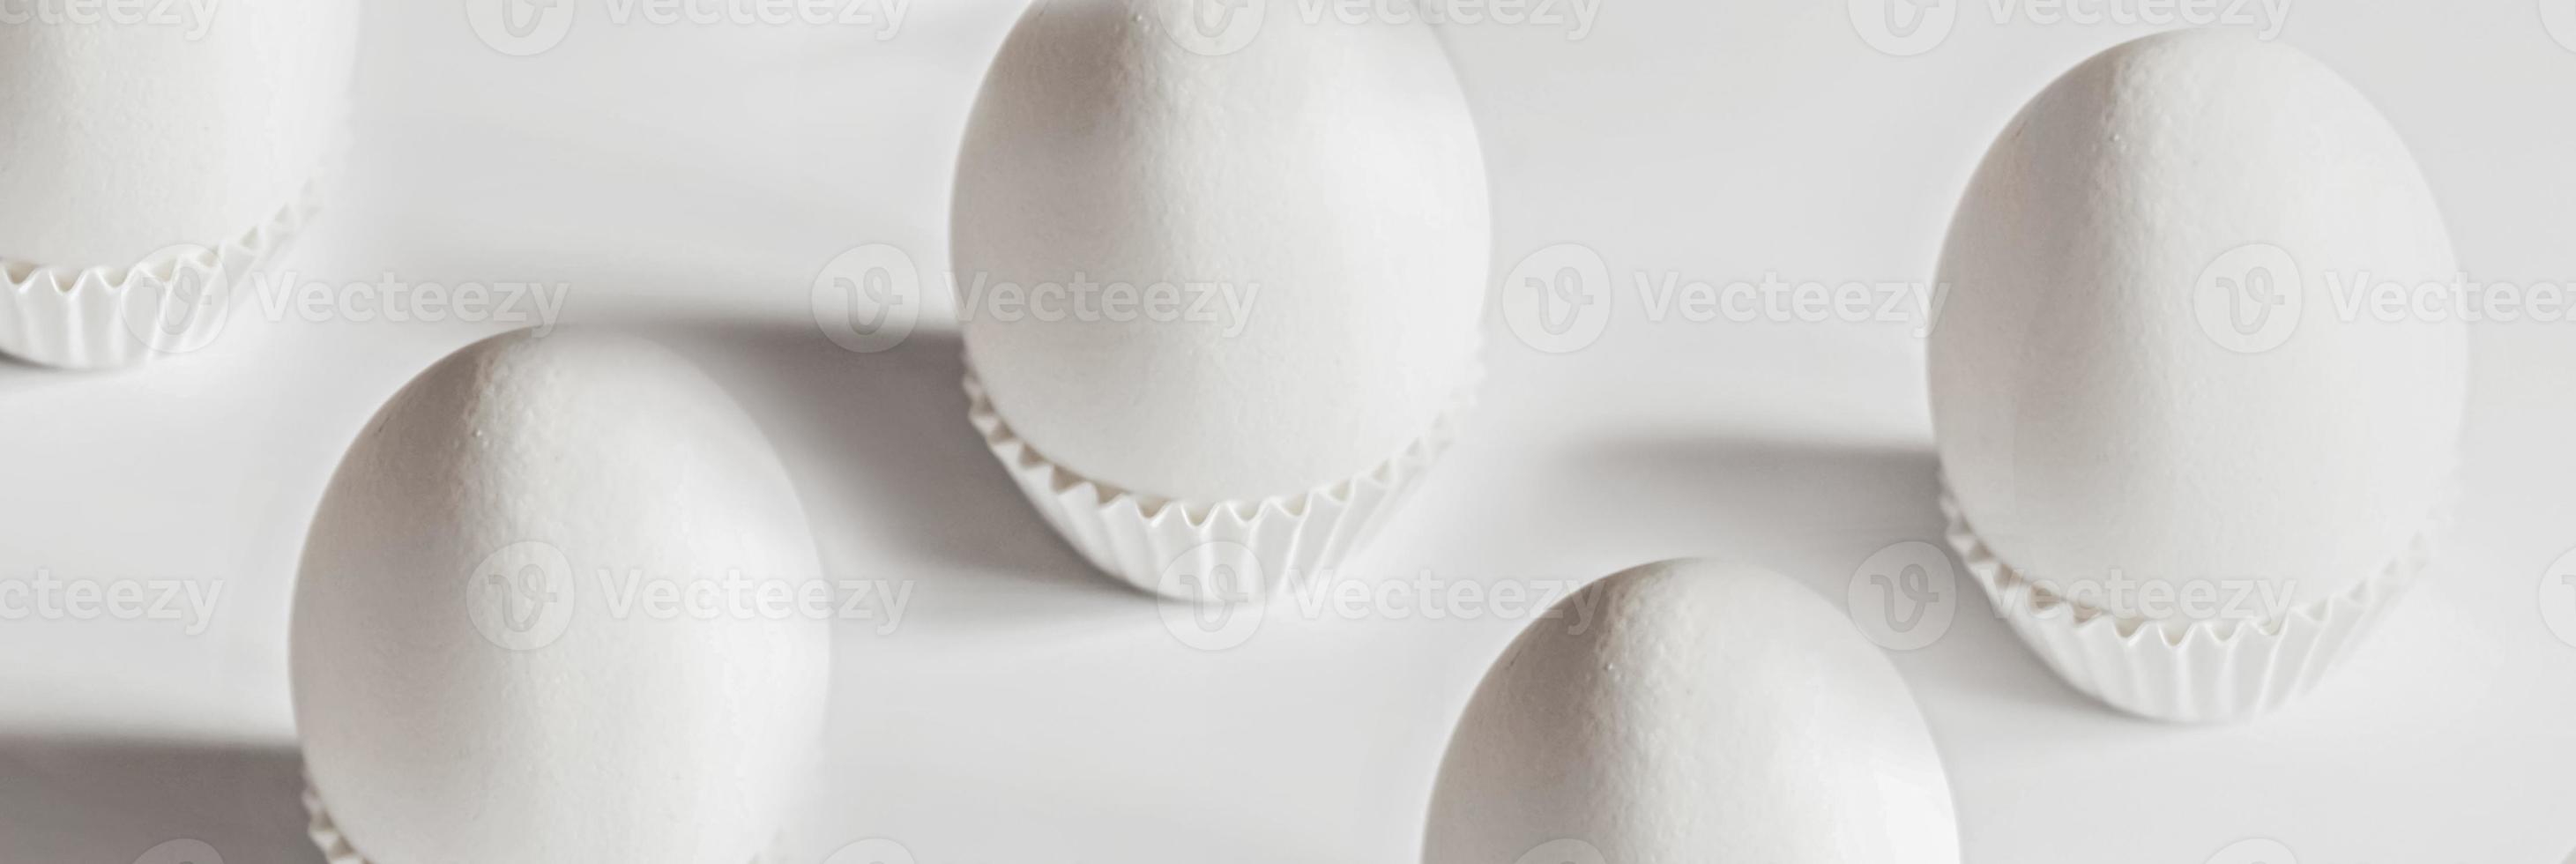 ovos brancos em um fundo branco isolado com sombras foto